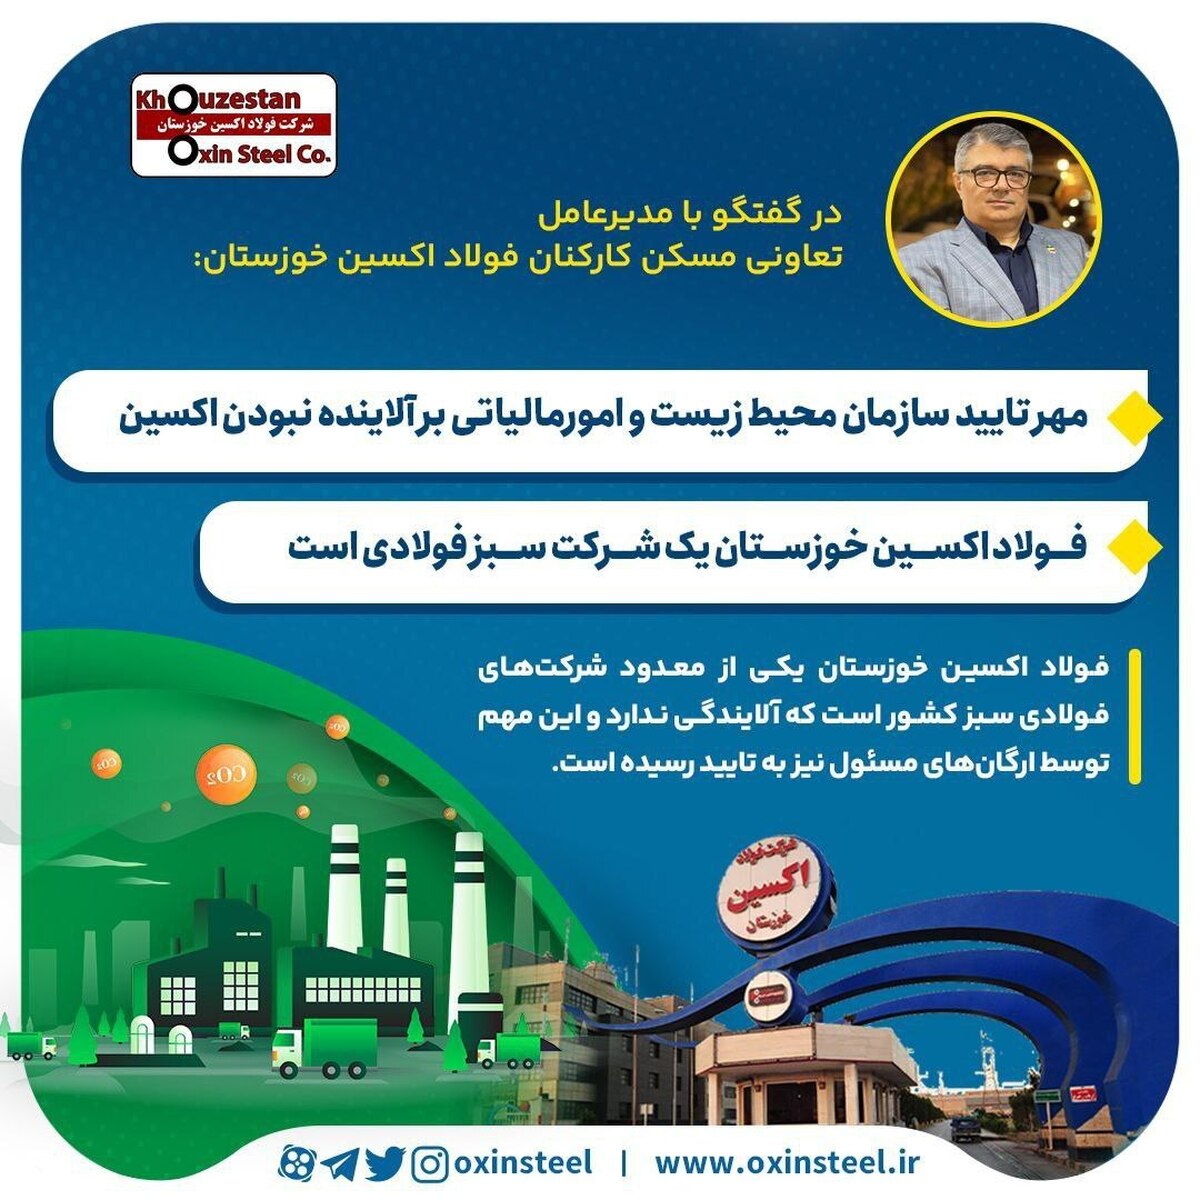 مهر تایید سازمان محیط زیست و امور مالیاتی بر آلاینده نبودن اکسین/ فولاد اکسین خوزستان یک شرکت سبز فولادی است